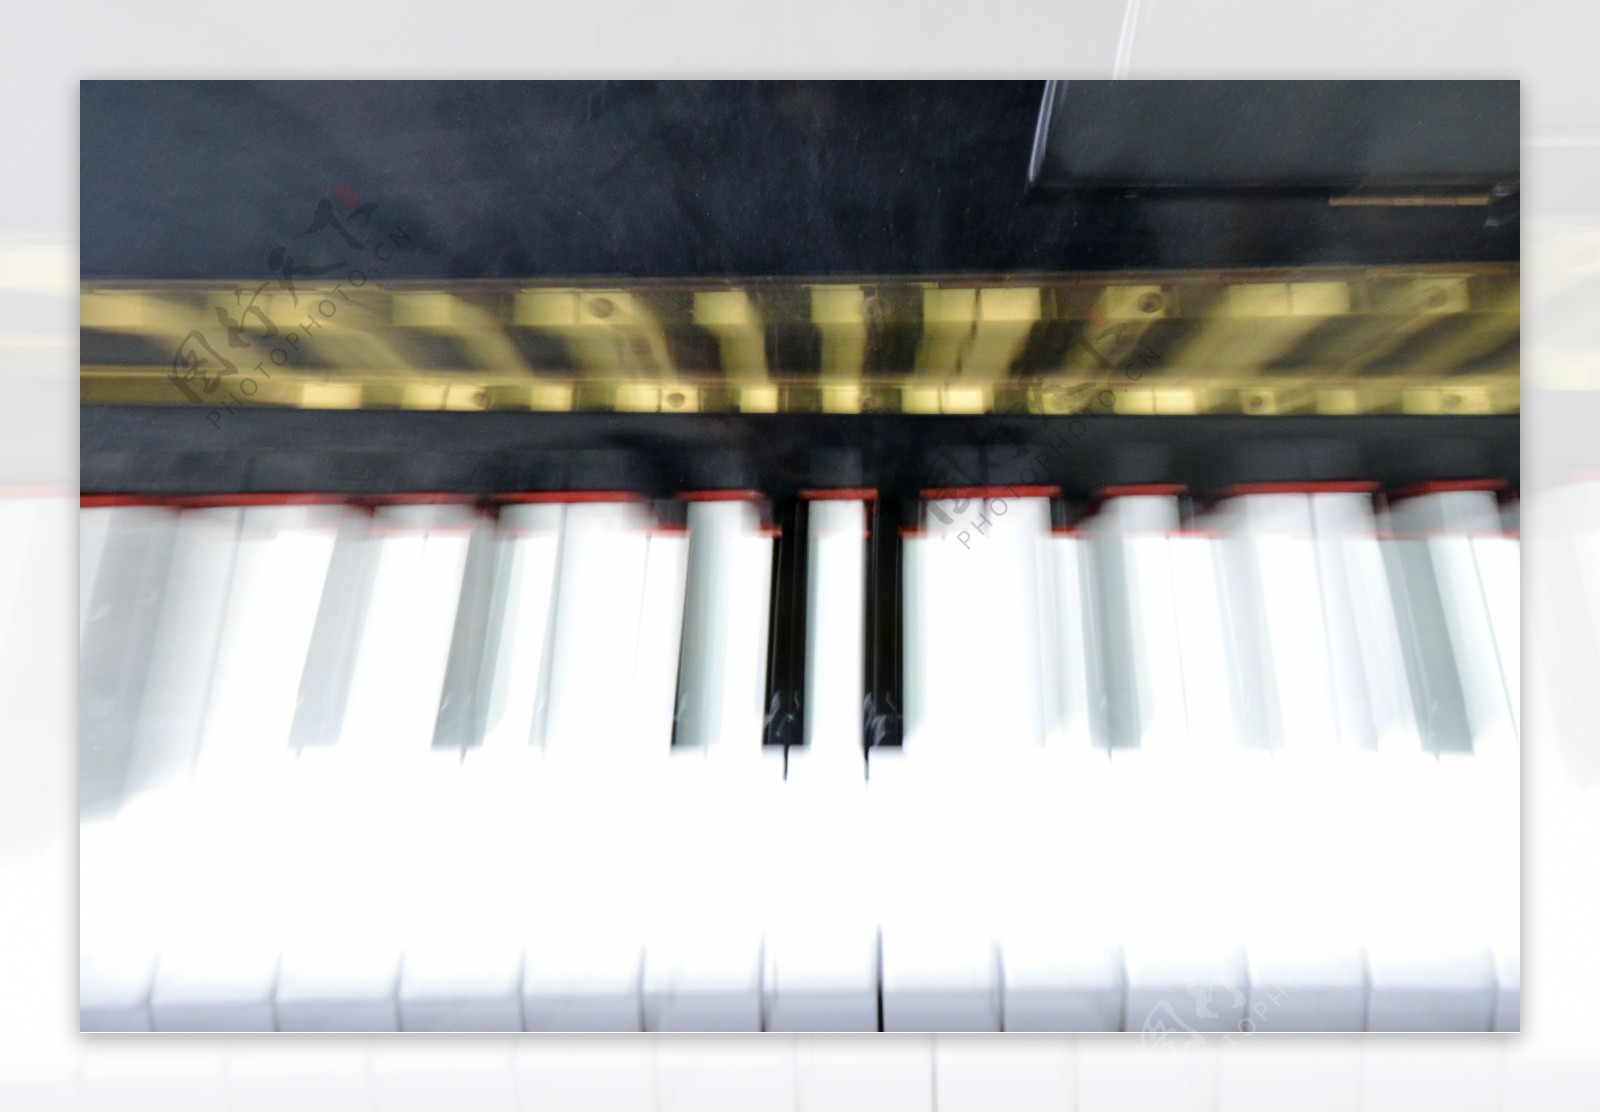 梦幻钢琴键图片